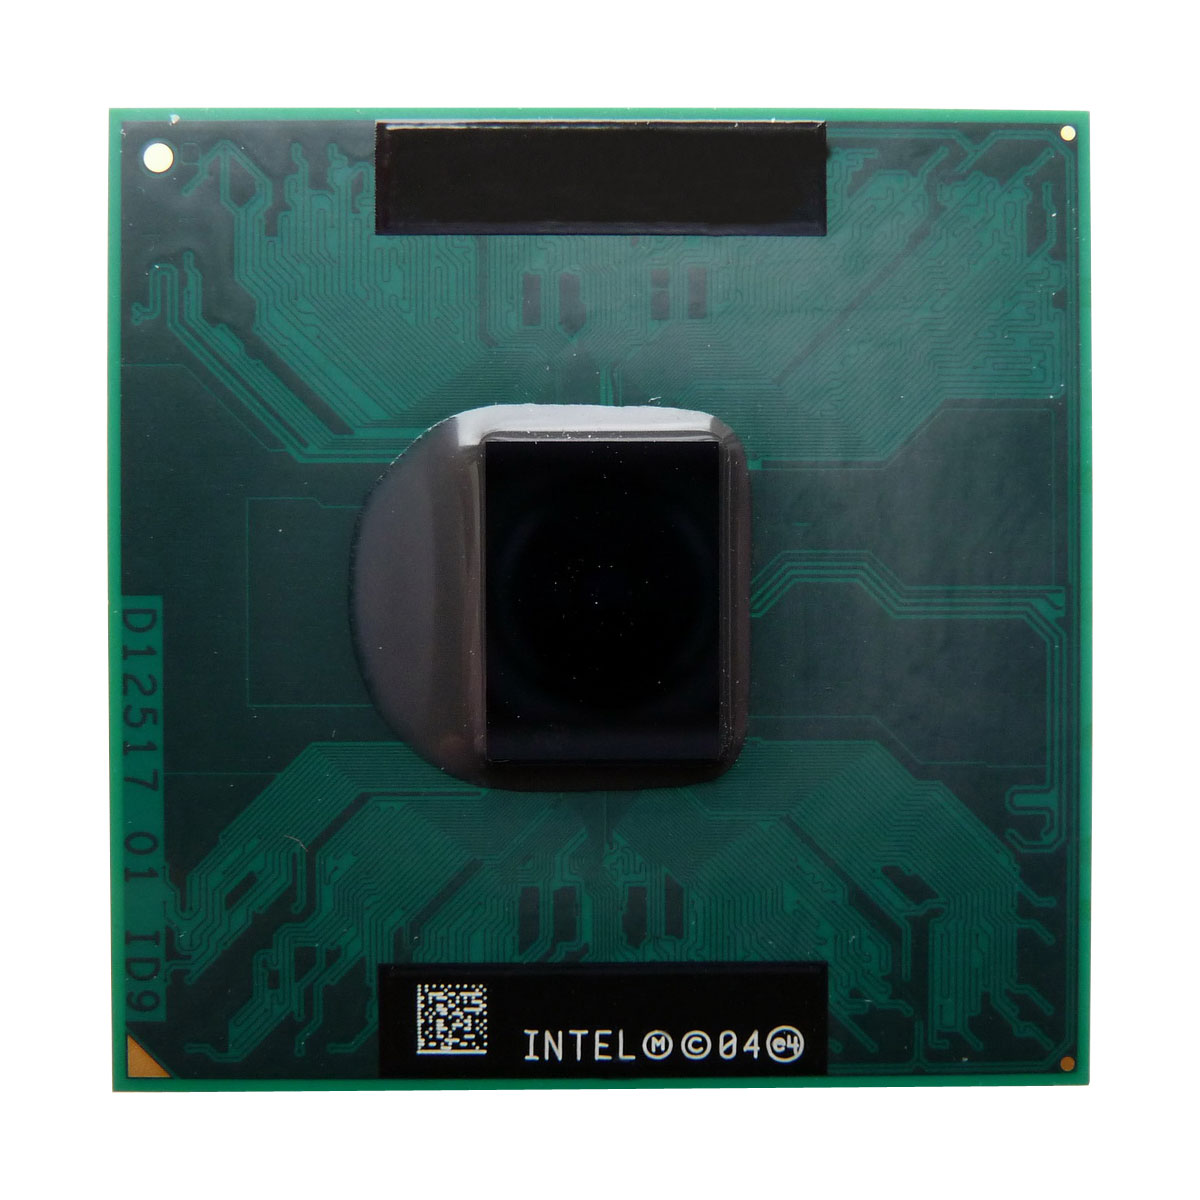 SL9BN Intel Core Duo T2050 Dual-Core 1.60GHz 533MHz FSB 2MB L2 Cache Socket PGA478 Mobile Processor